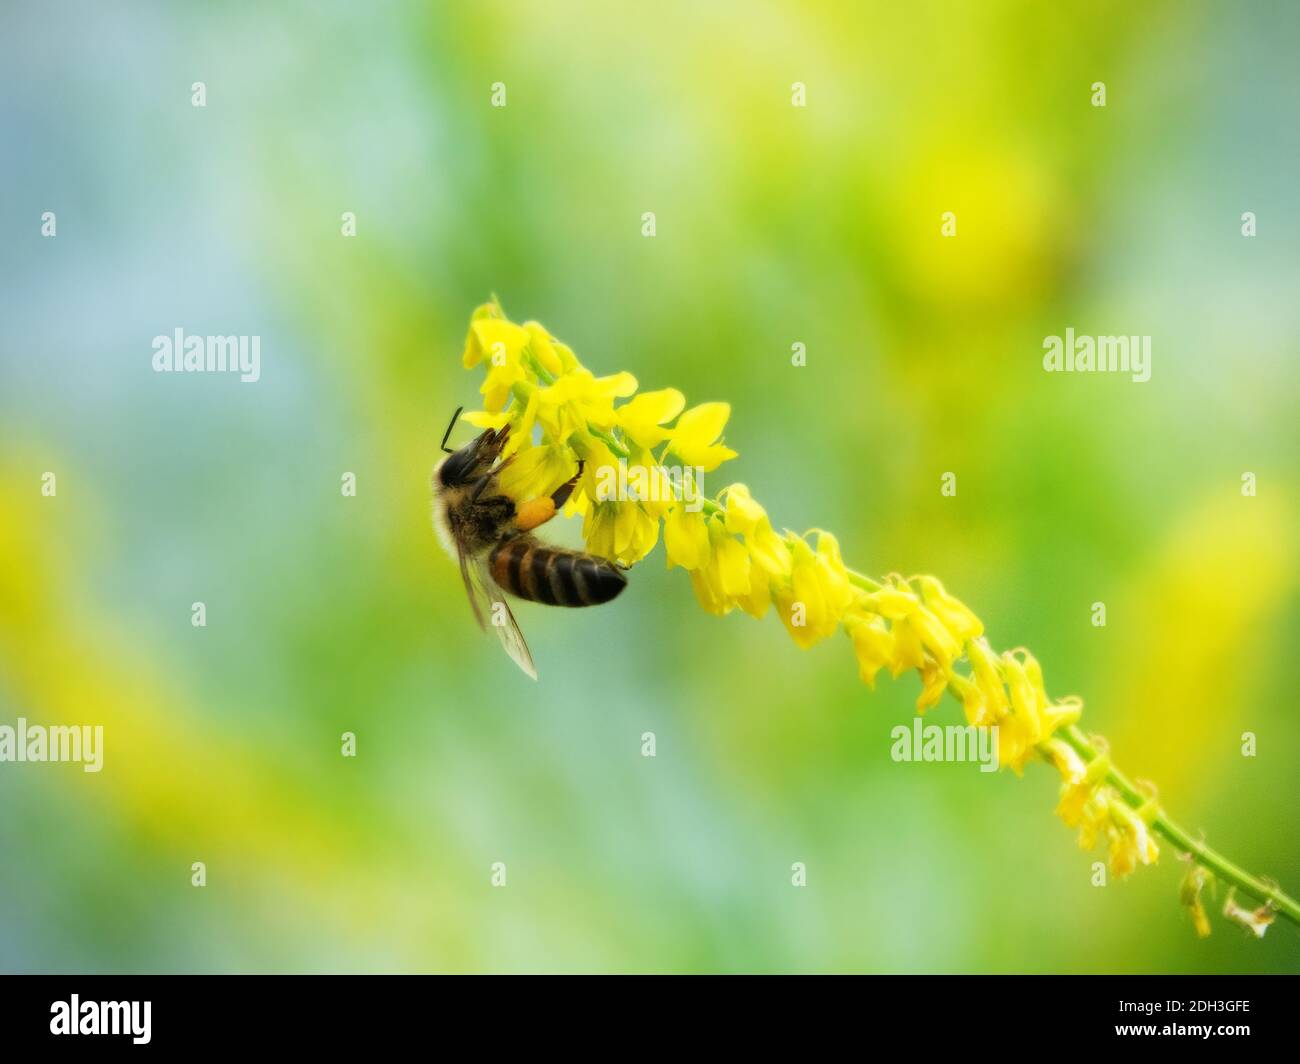 Hony bee flies around the flowers Stock Photo